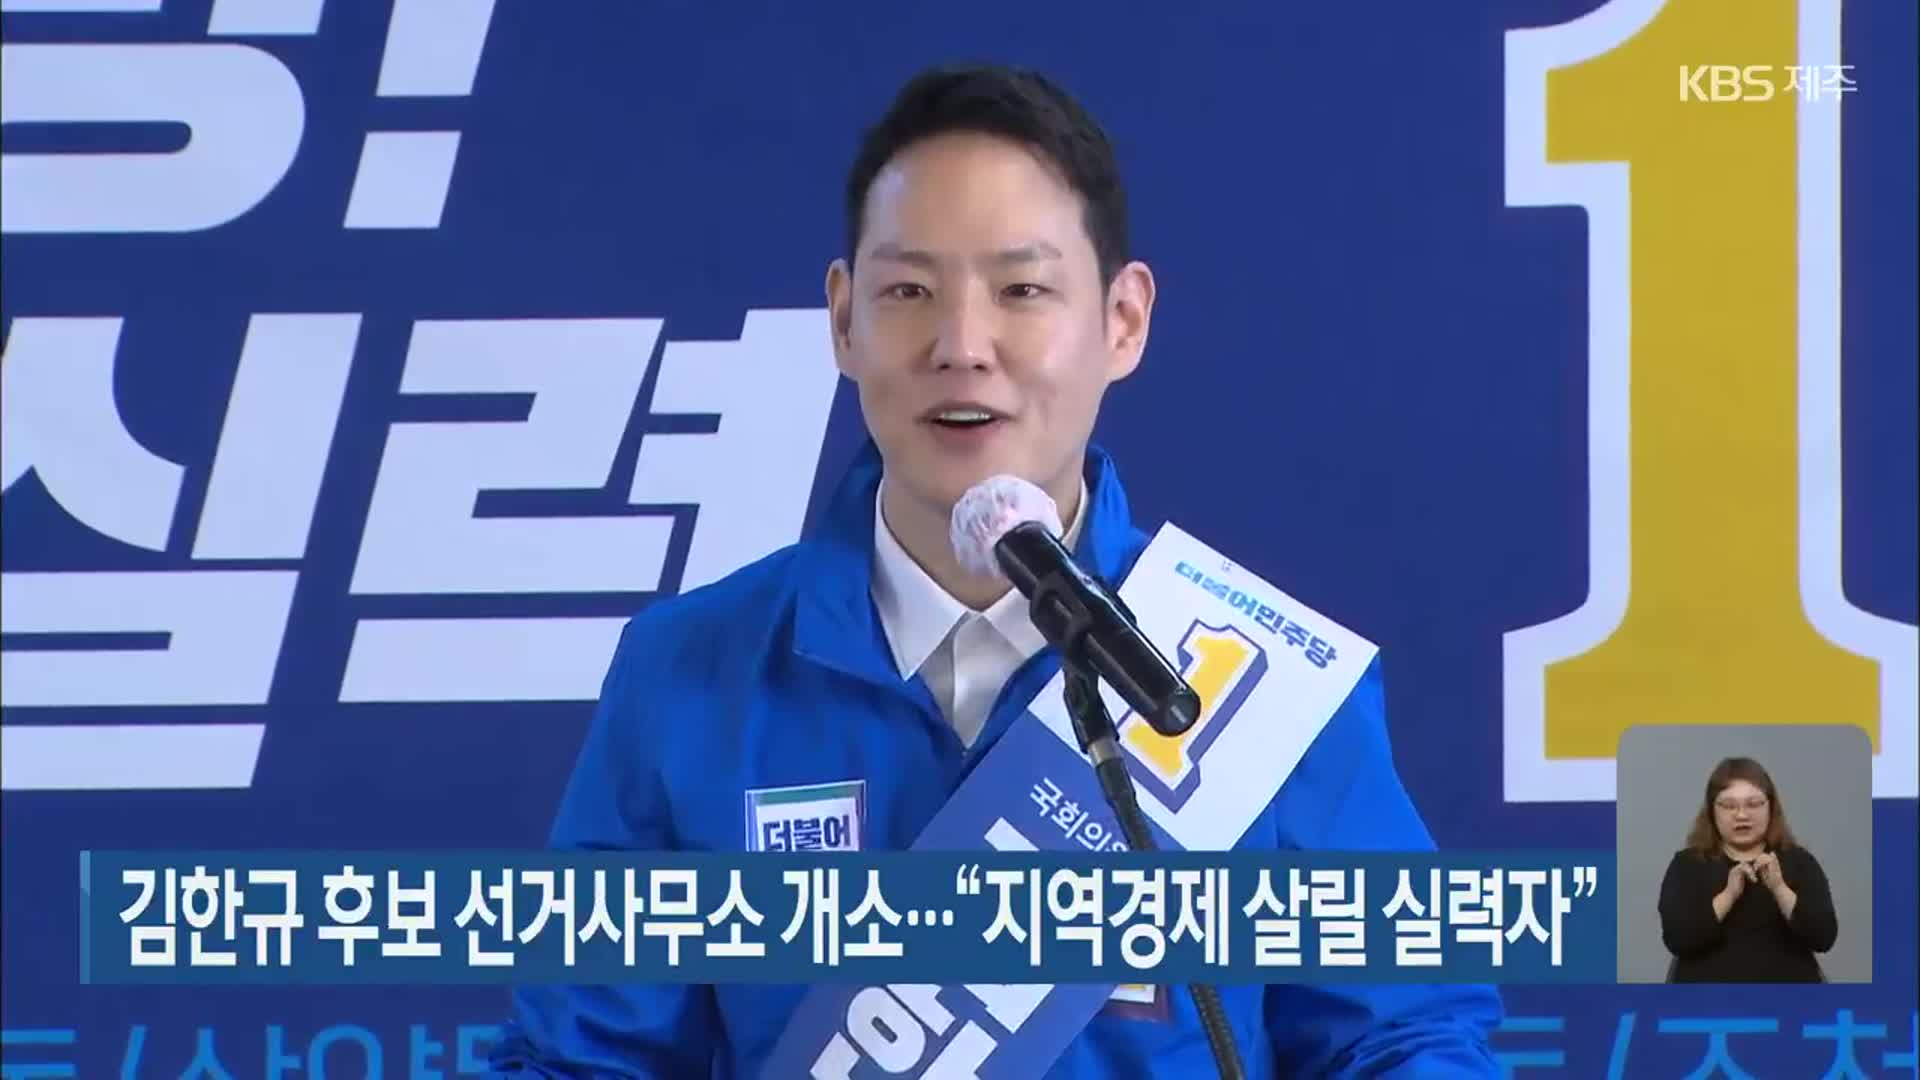 김한규 후보 선거사무소 개소…“지역경제 살릴 실력자”